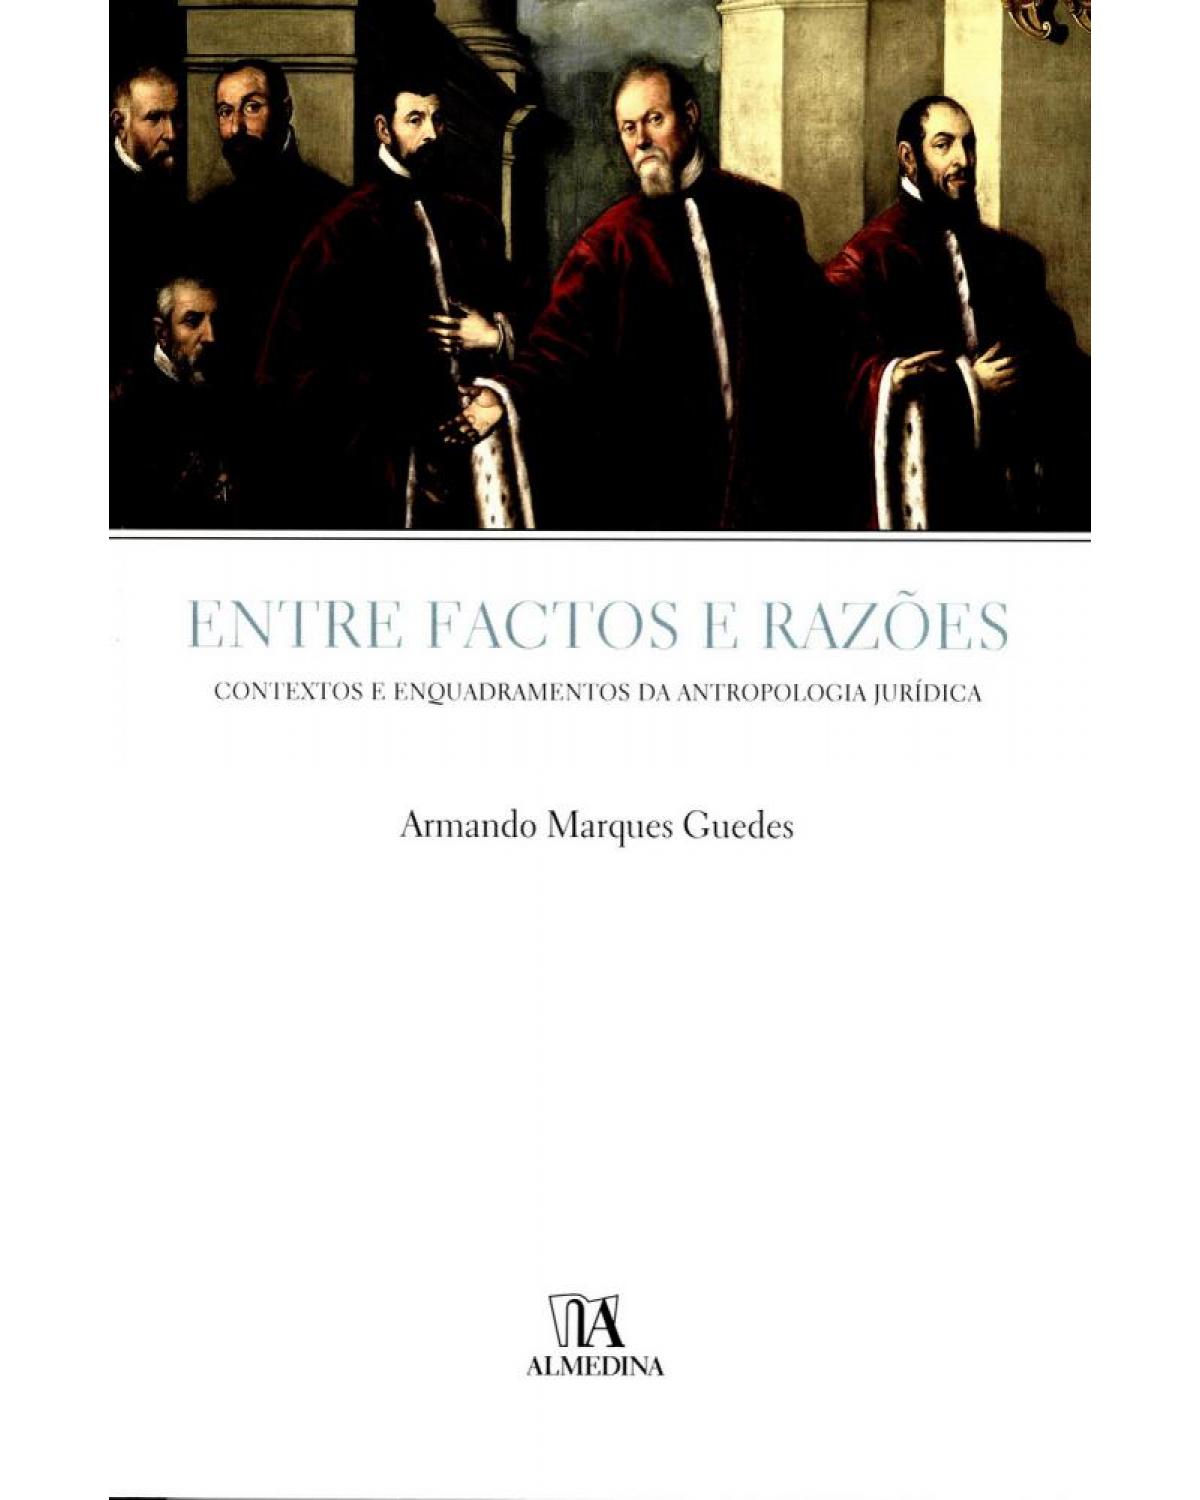 Entre factos e razões - contextos e enquadramentos da antropologia jurídica - 1ª Edição | 2005